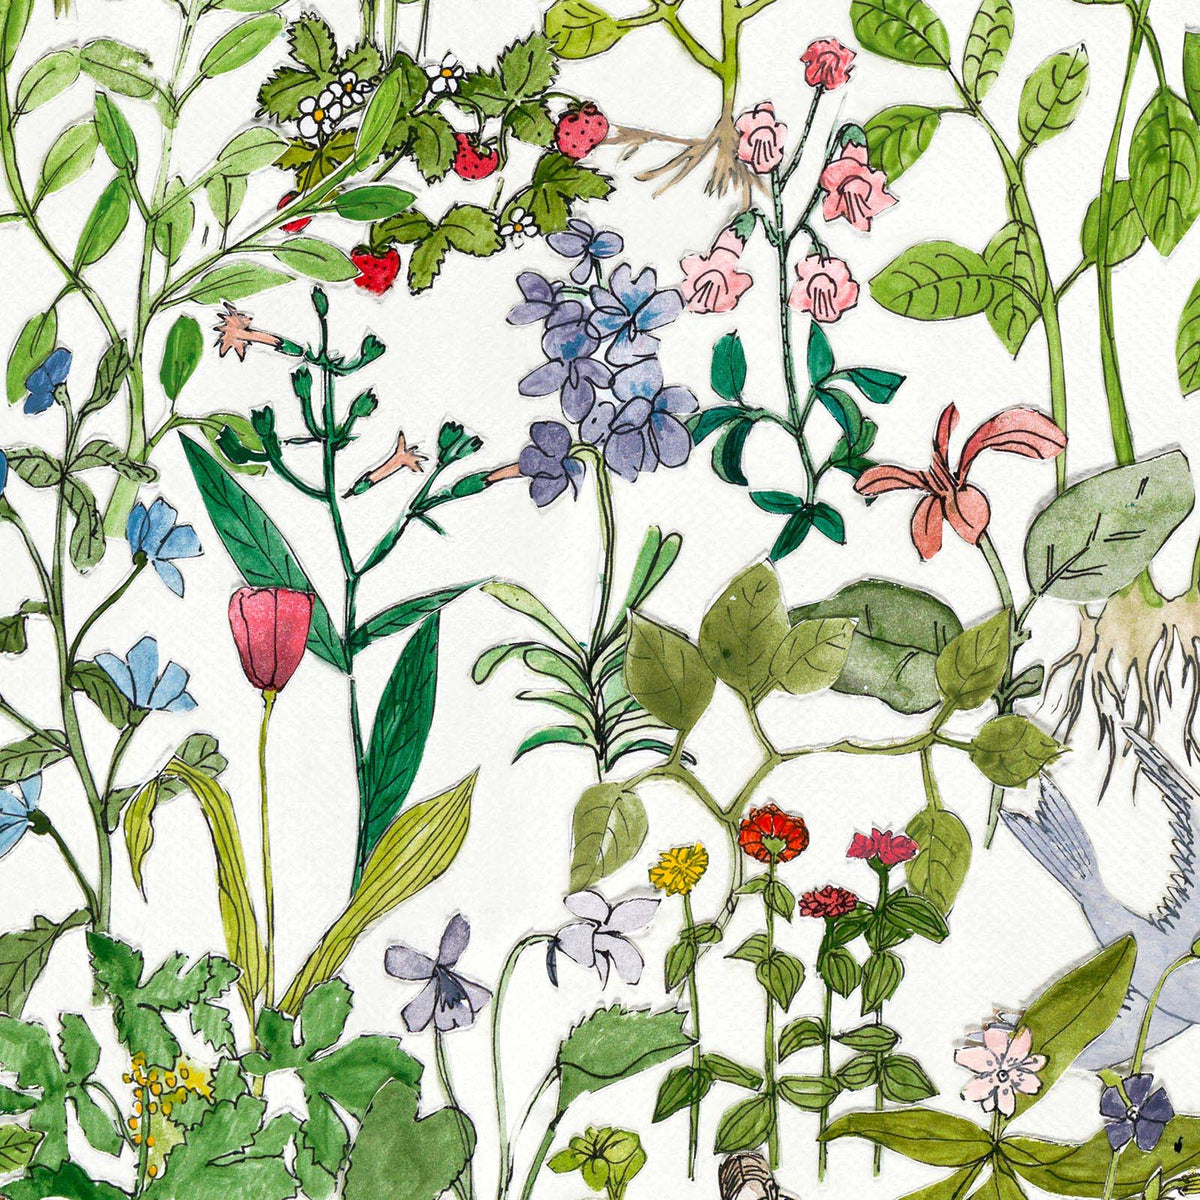 ASU-01 Enchanted Garden wallpaper by Anna Surie for NLXL